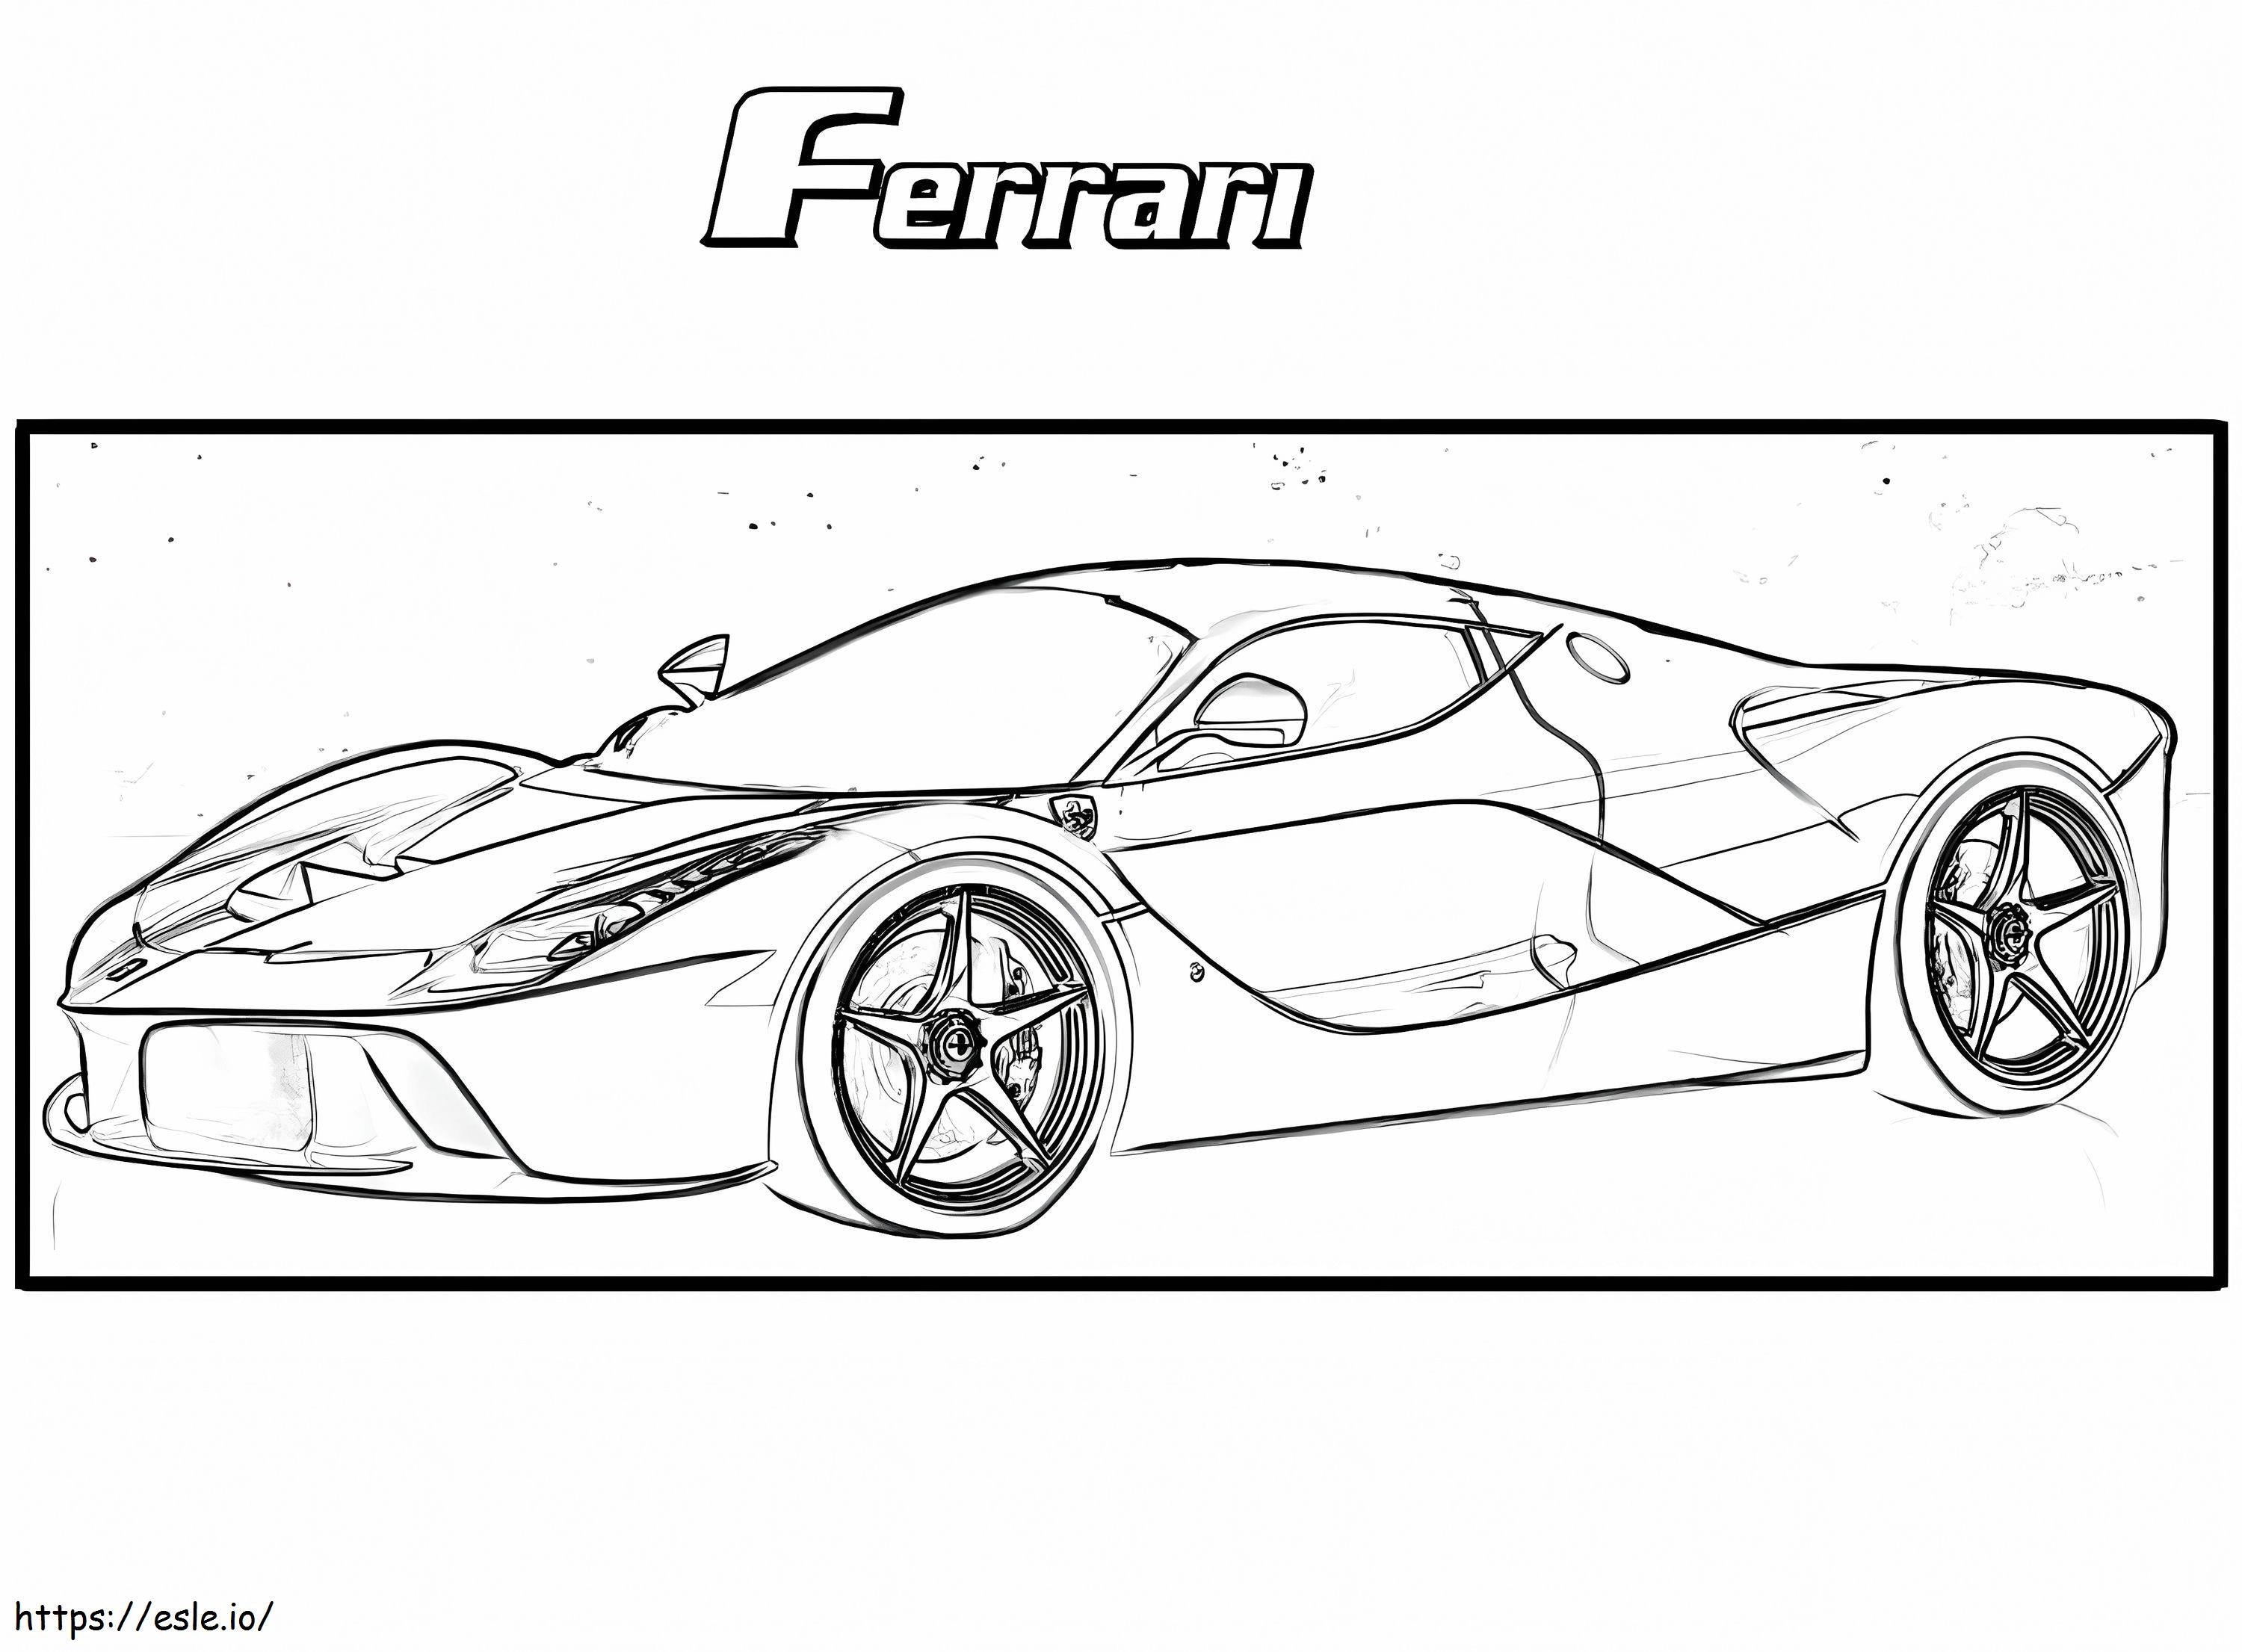 Ferrari 11 coloring page